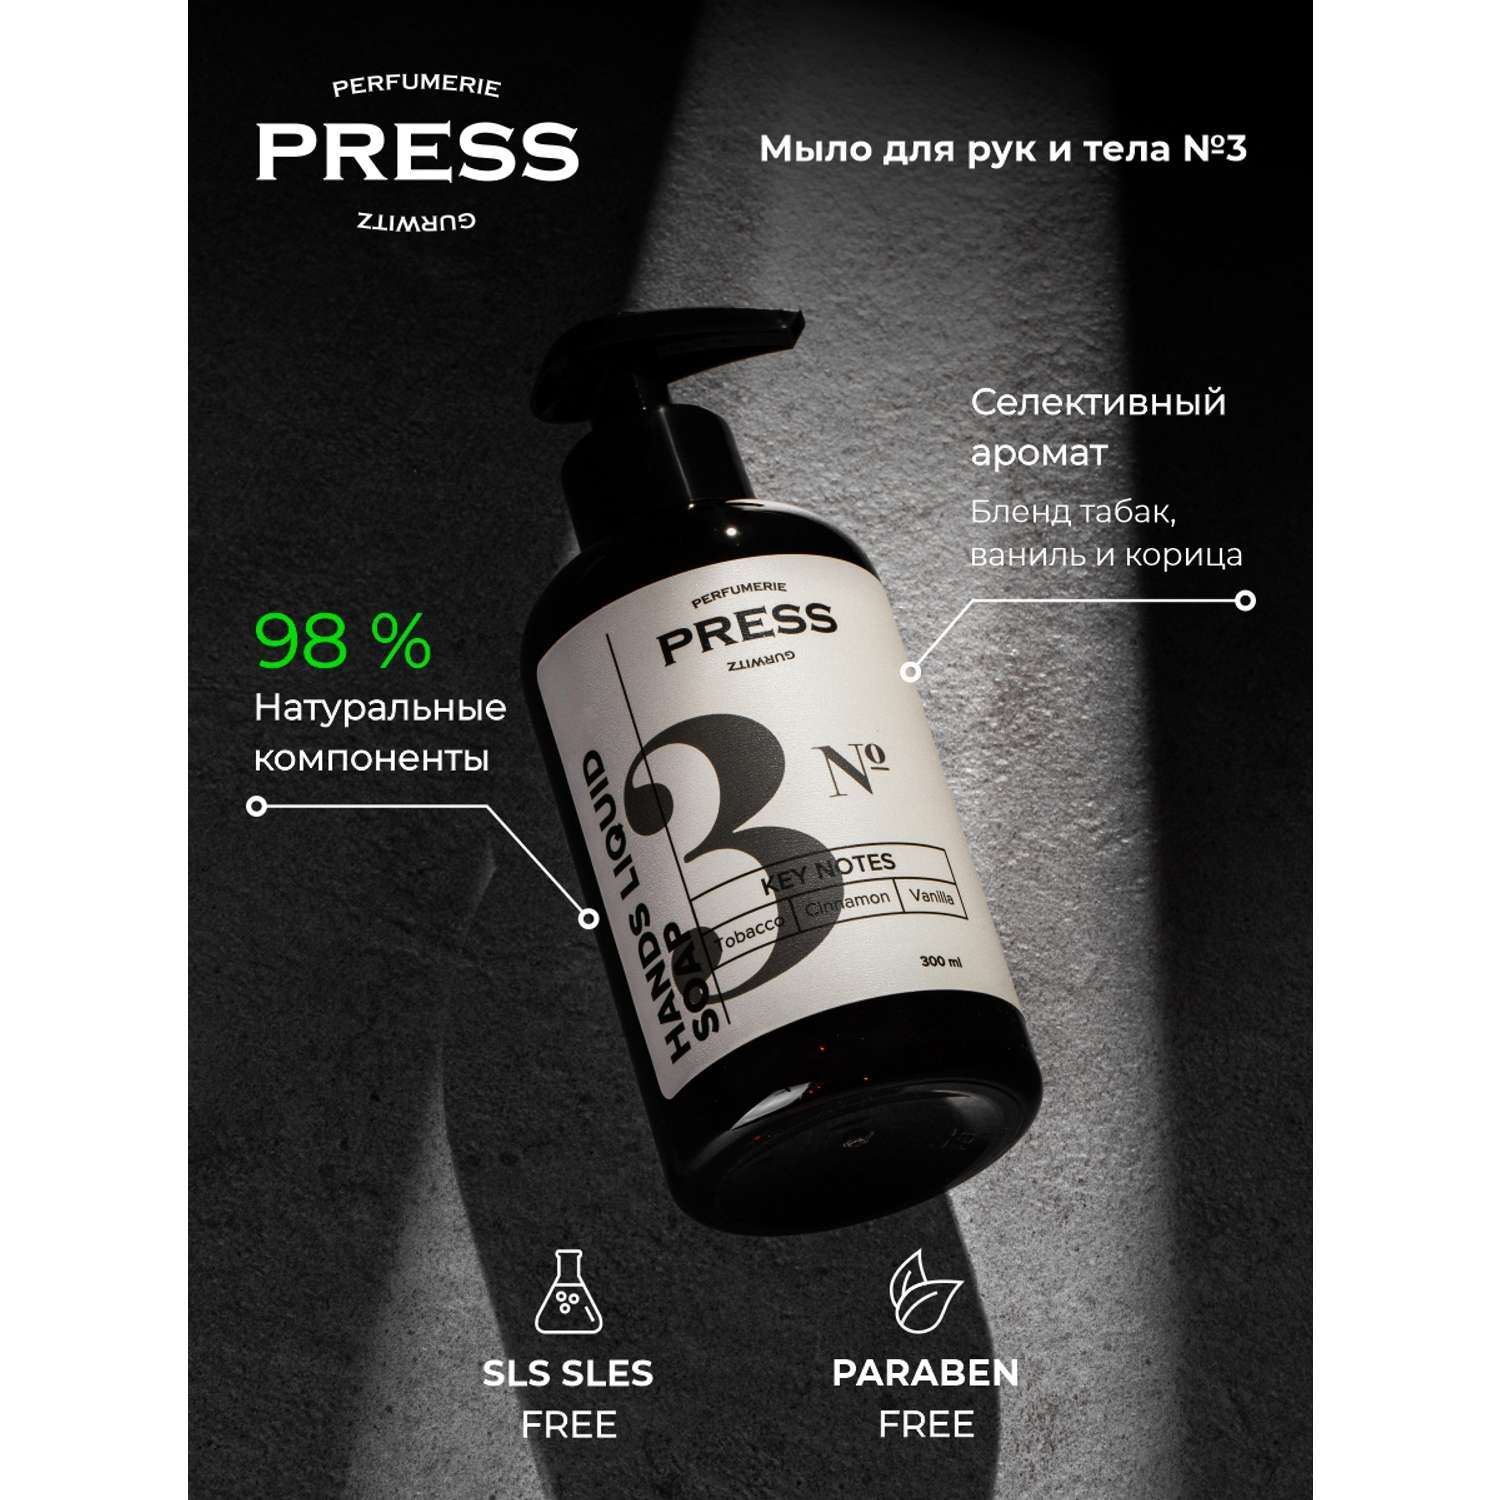 Жидкое мыло для рук №3 Press Gurwitz Perfumerie парфюмированное с Табак Ваниль Корица натуральное - фото 3